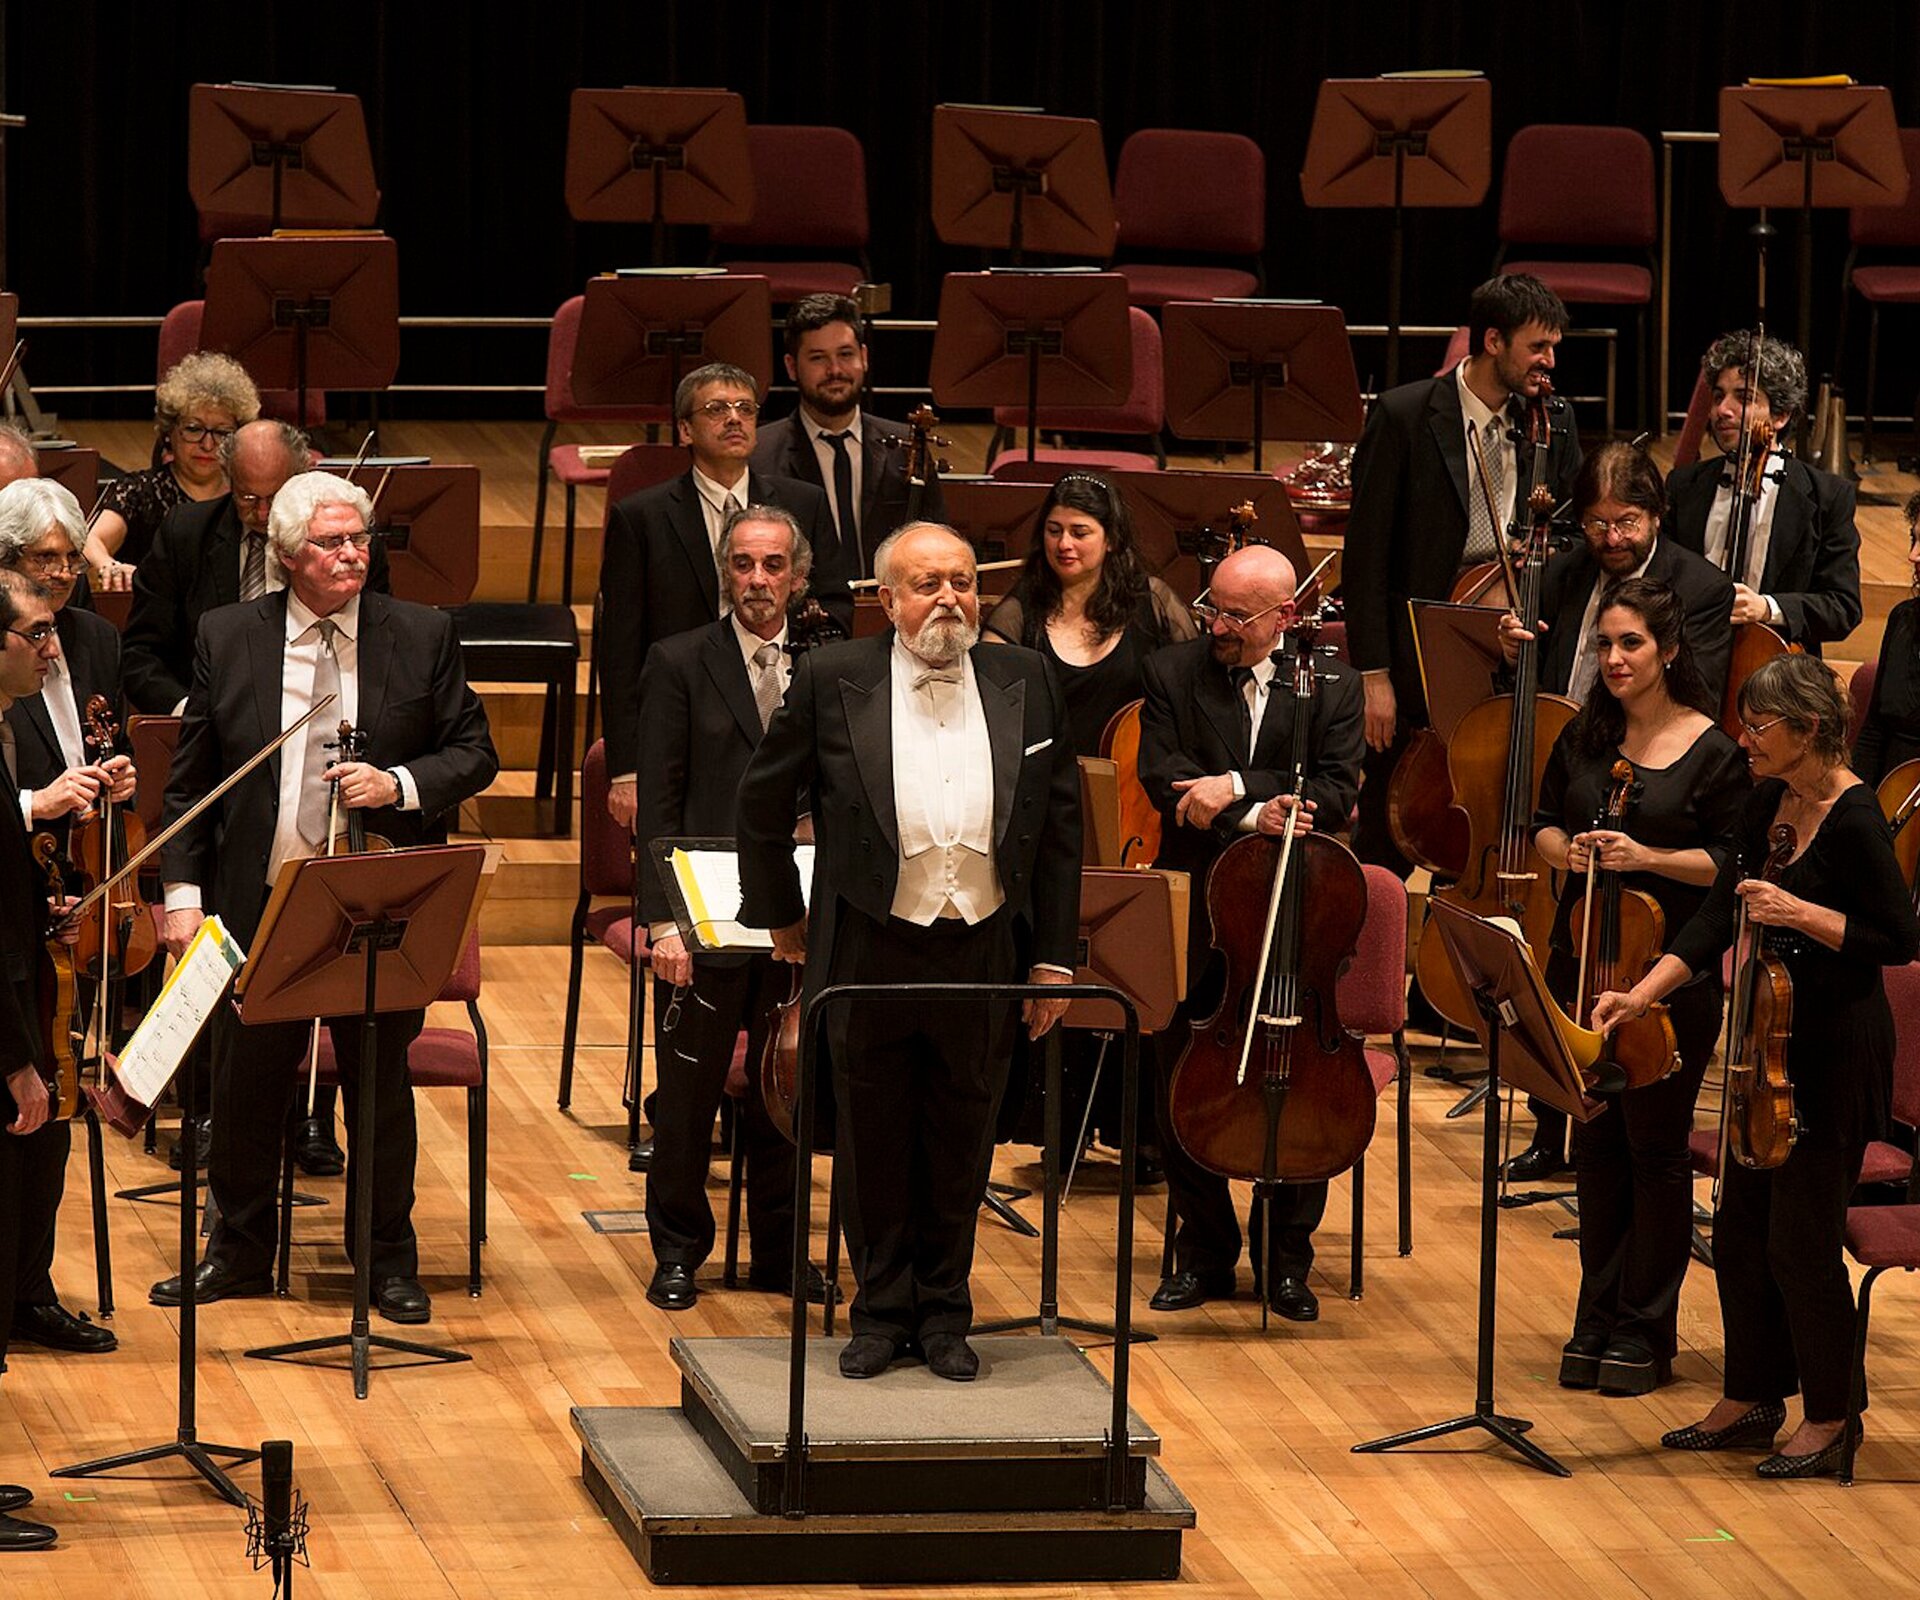 Na zdjęciu muzycy z instrumentami oraz dyrygent na sali koncertowej. Wszyscy stoją przodem do publiczności.